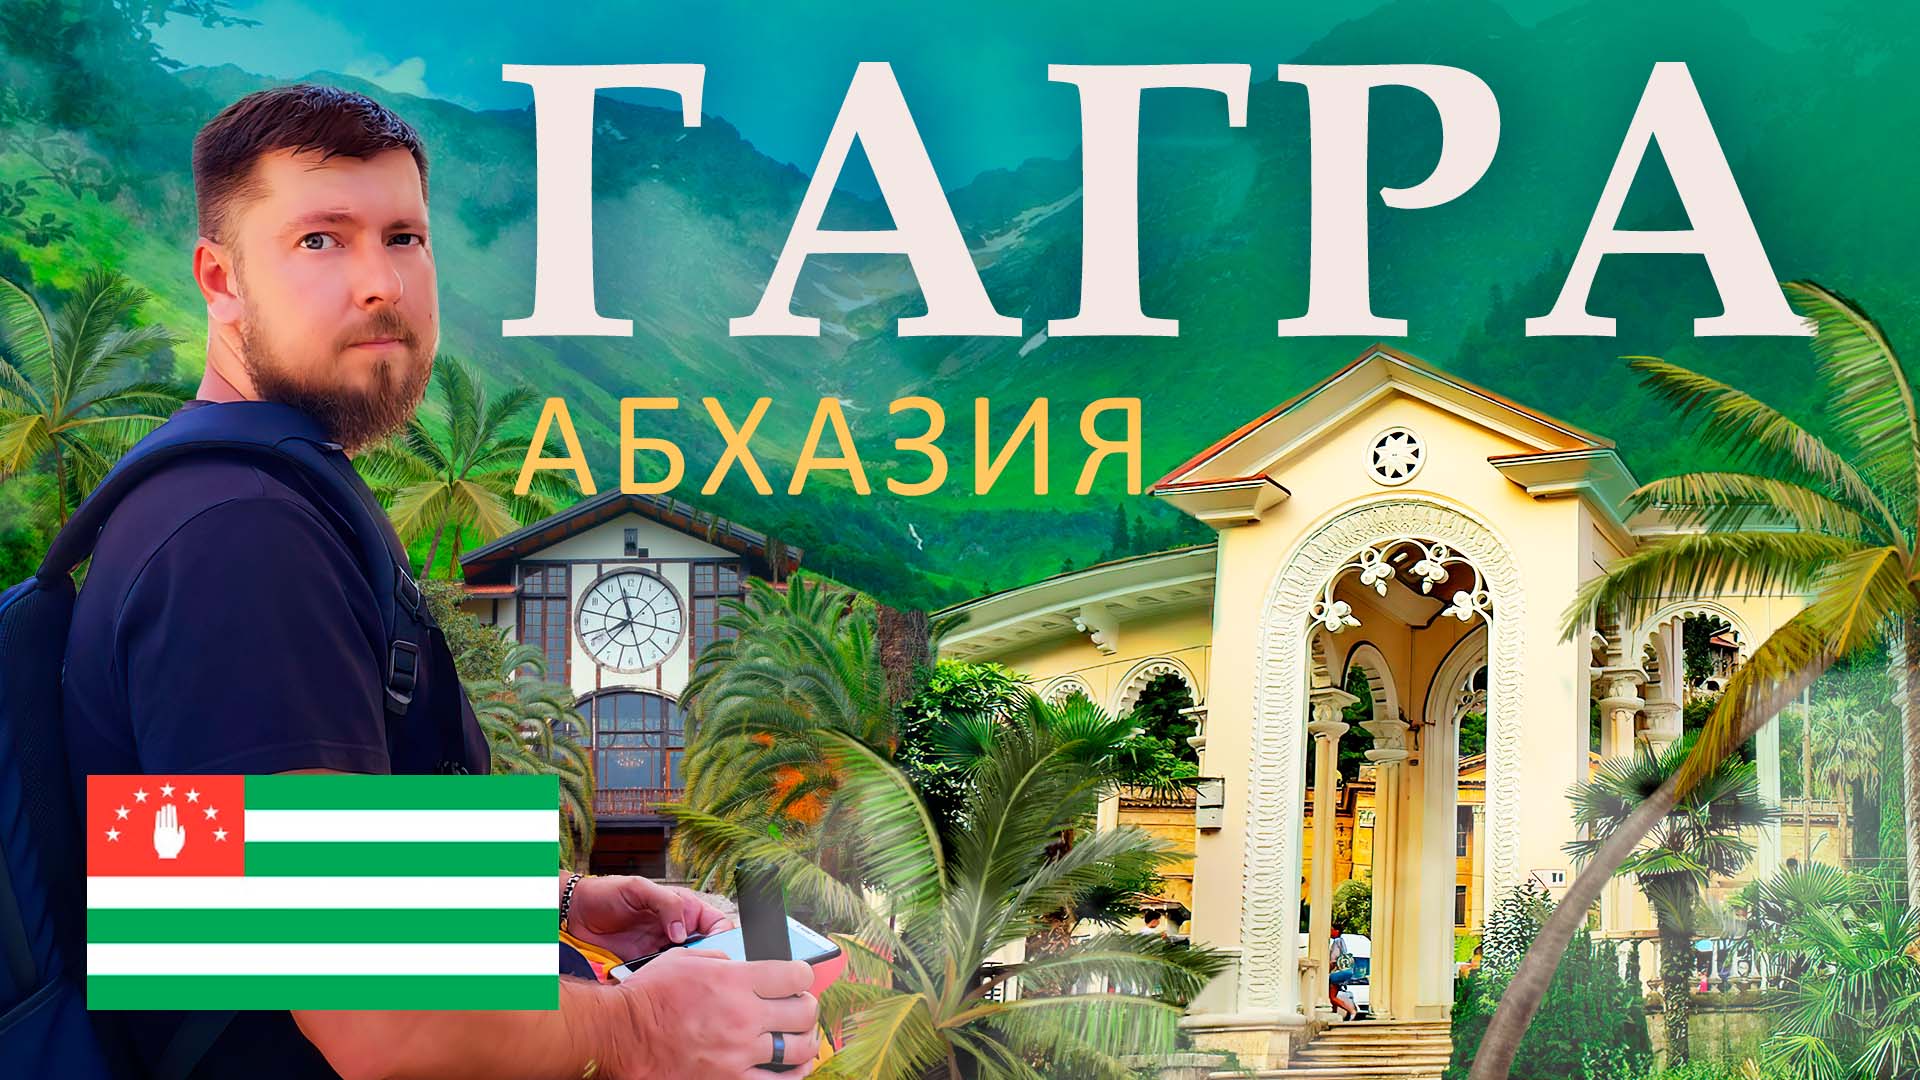 Гагра - главный курорт Абхазии | Достопримечательности Гагры | Обзор Гагры